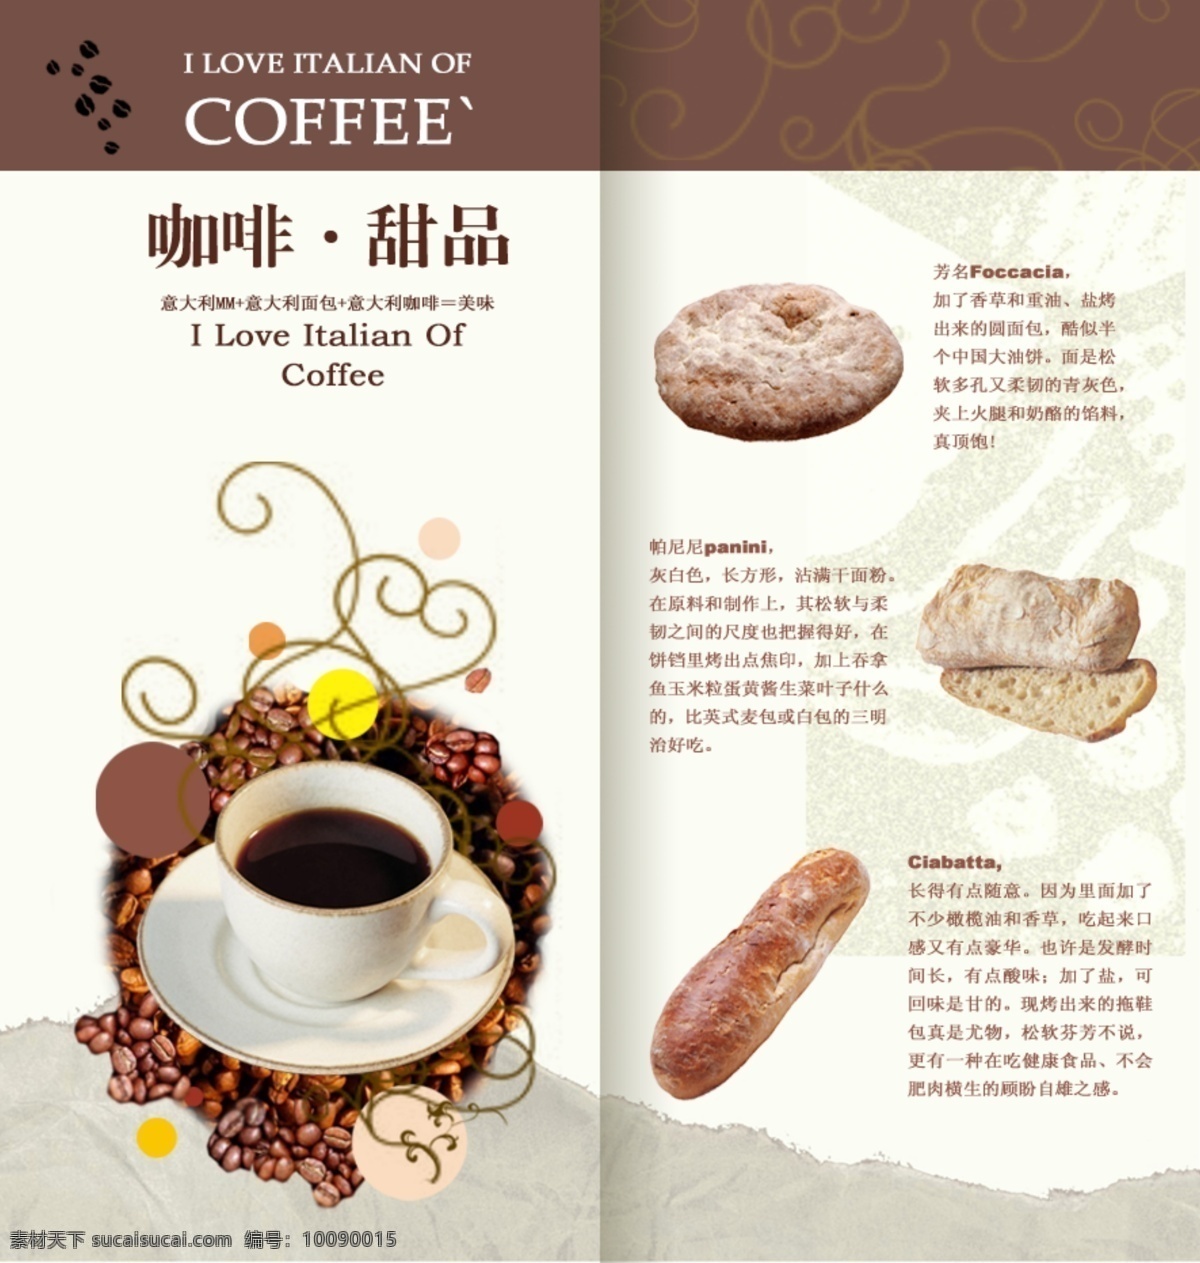 咖啡厅菜单 咖啡甜品 内页宣传 菜单 咖啡色底纹 白色